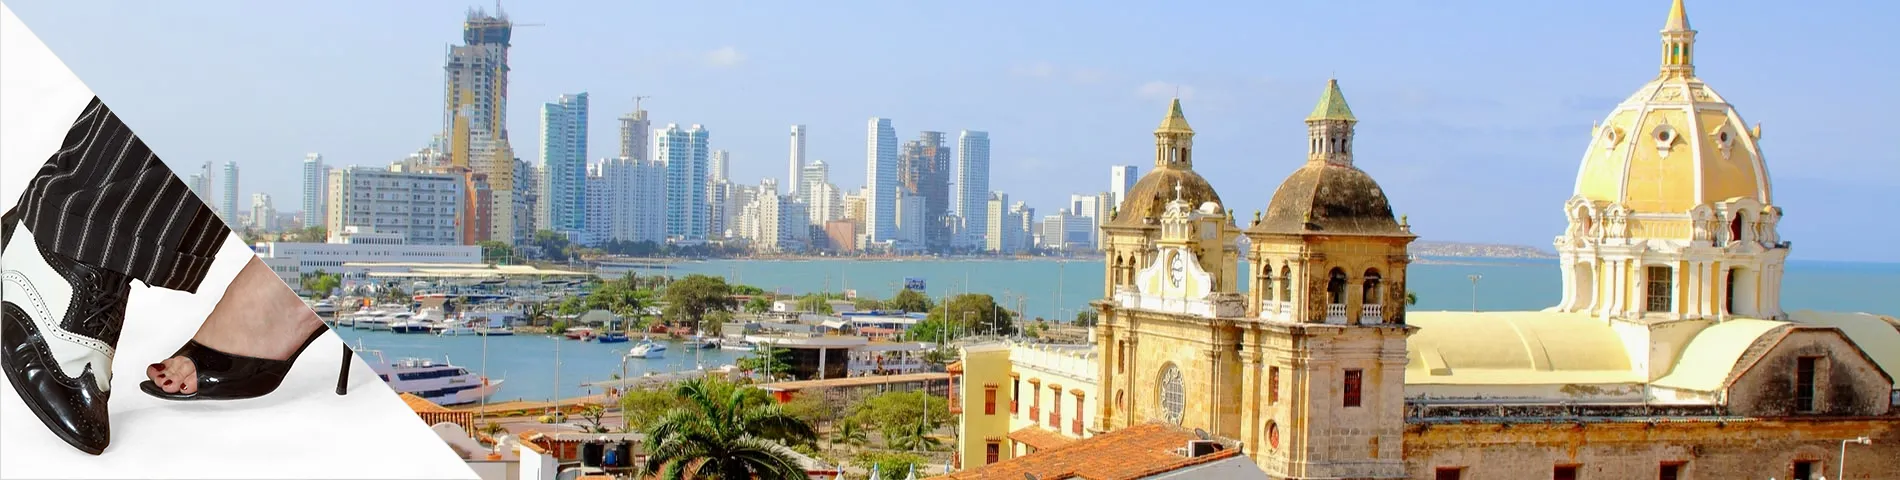 Cartagena - Spagnolo & Danza